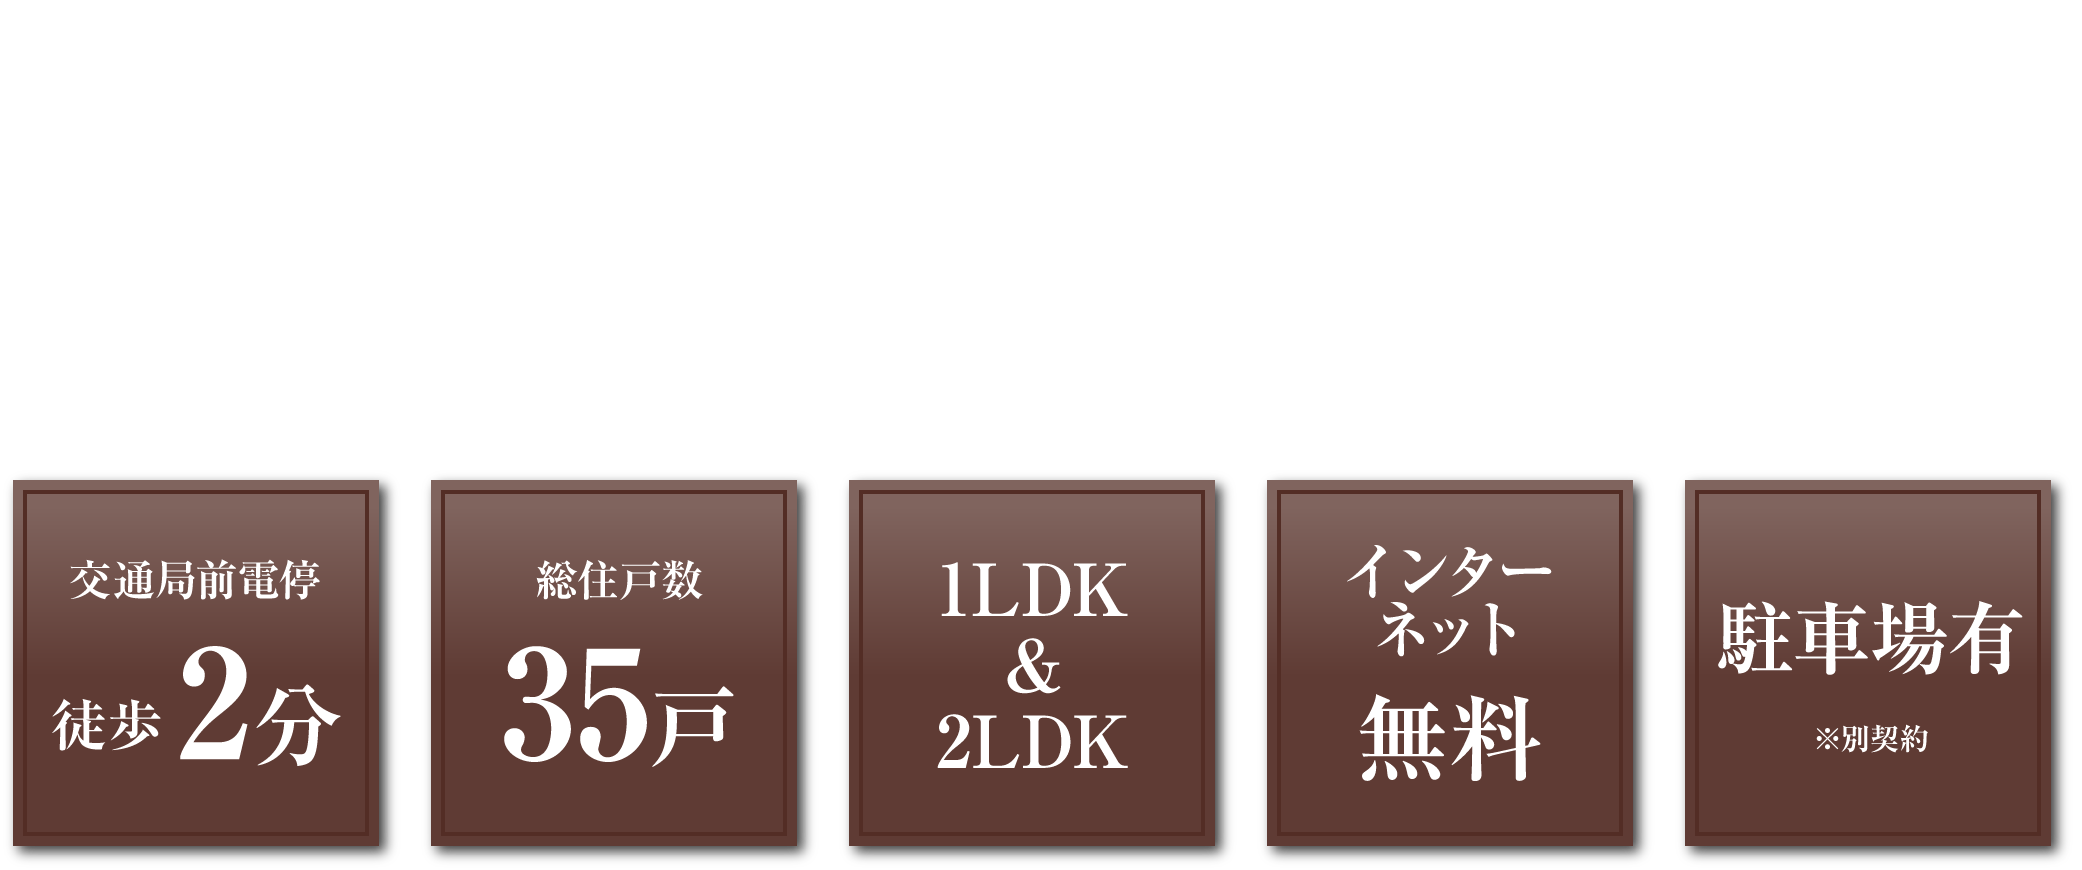 D Place KUHONJI 2020年秋頃竣工予定